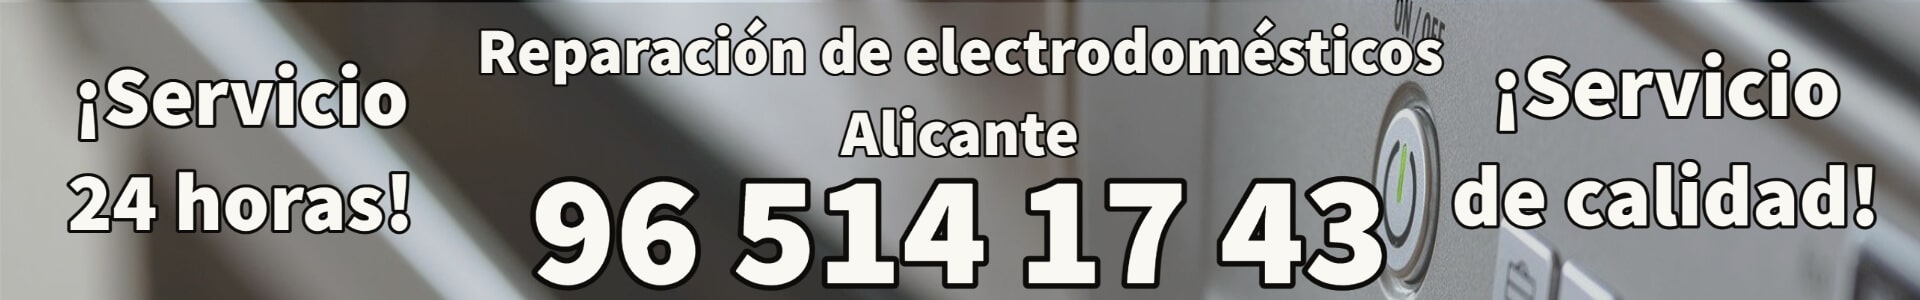 Reparación de Electrodomésticos Alicante